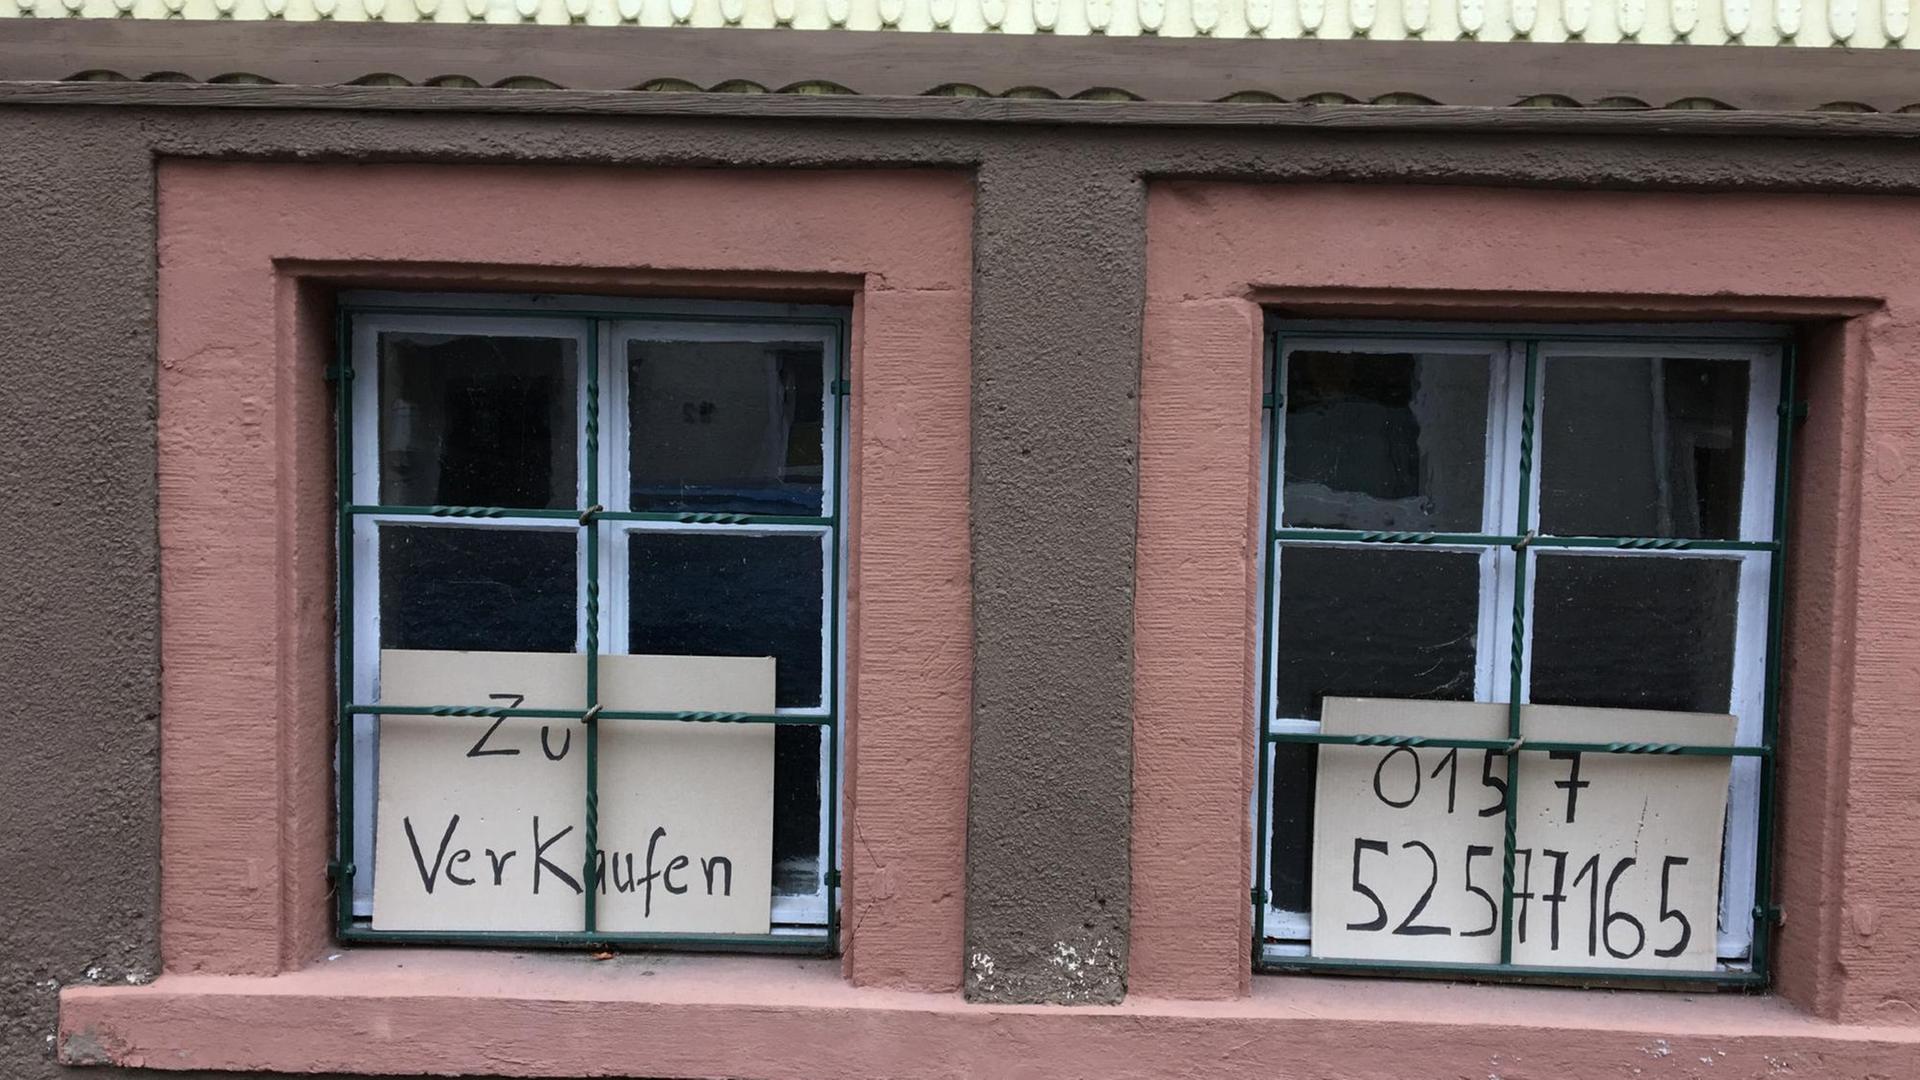 Zwei Fenster eines Hauses in Beerfelden, in dem Schilder zu sehen sind mit der Aufschrift "zu verkaufen" sowie einer Telefonnummer